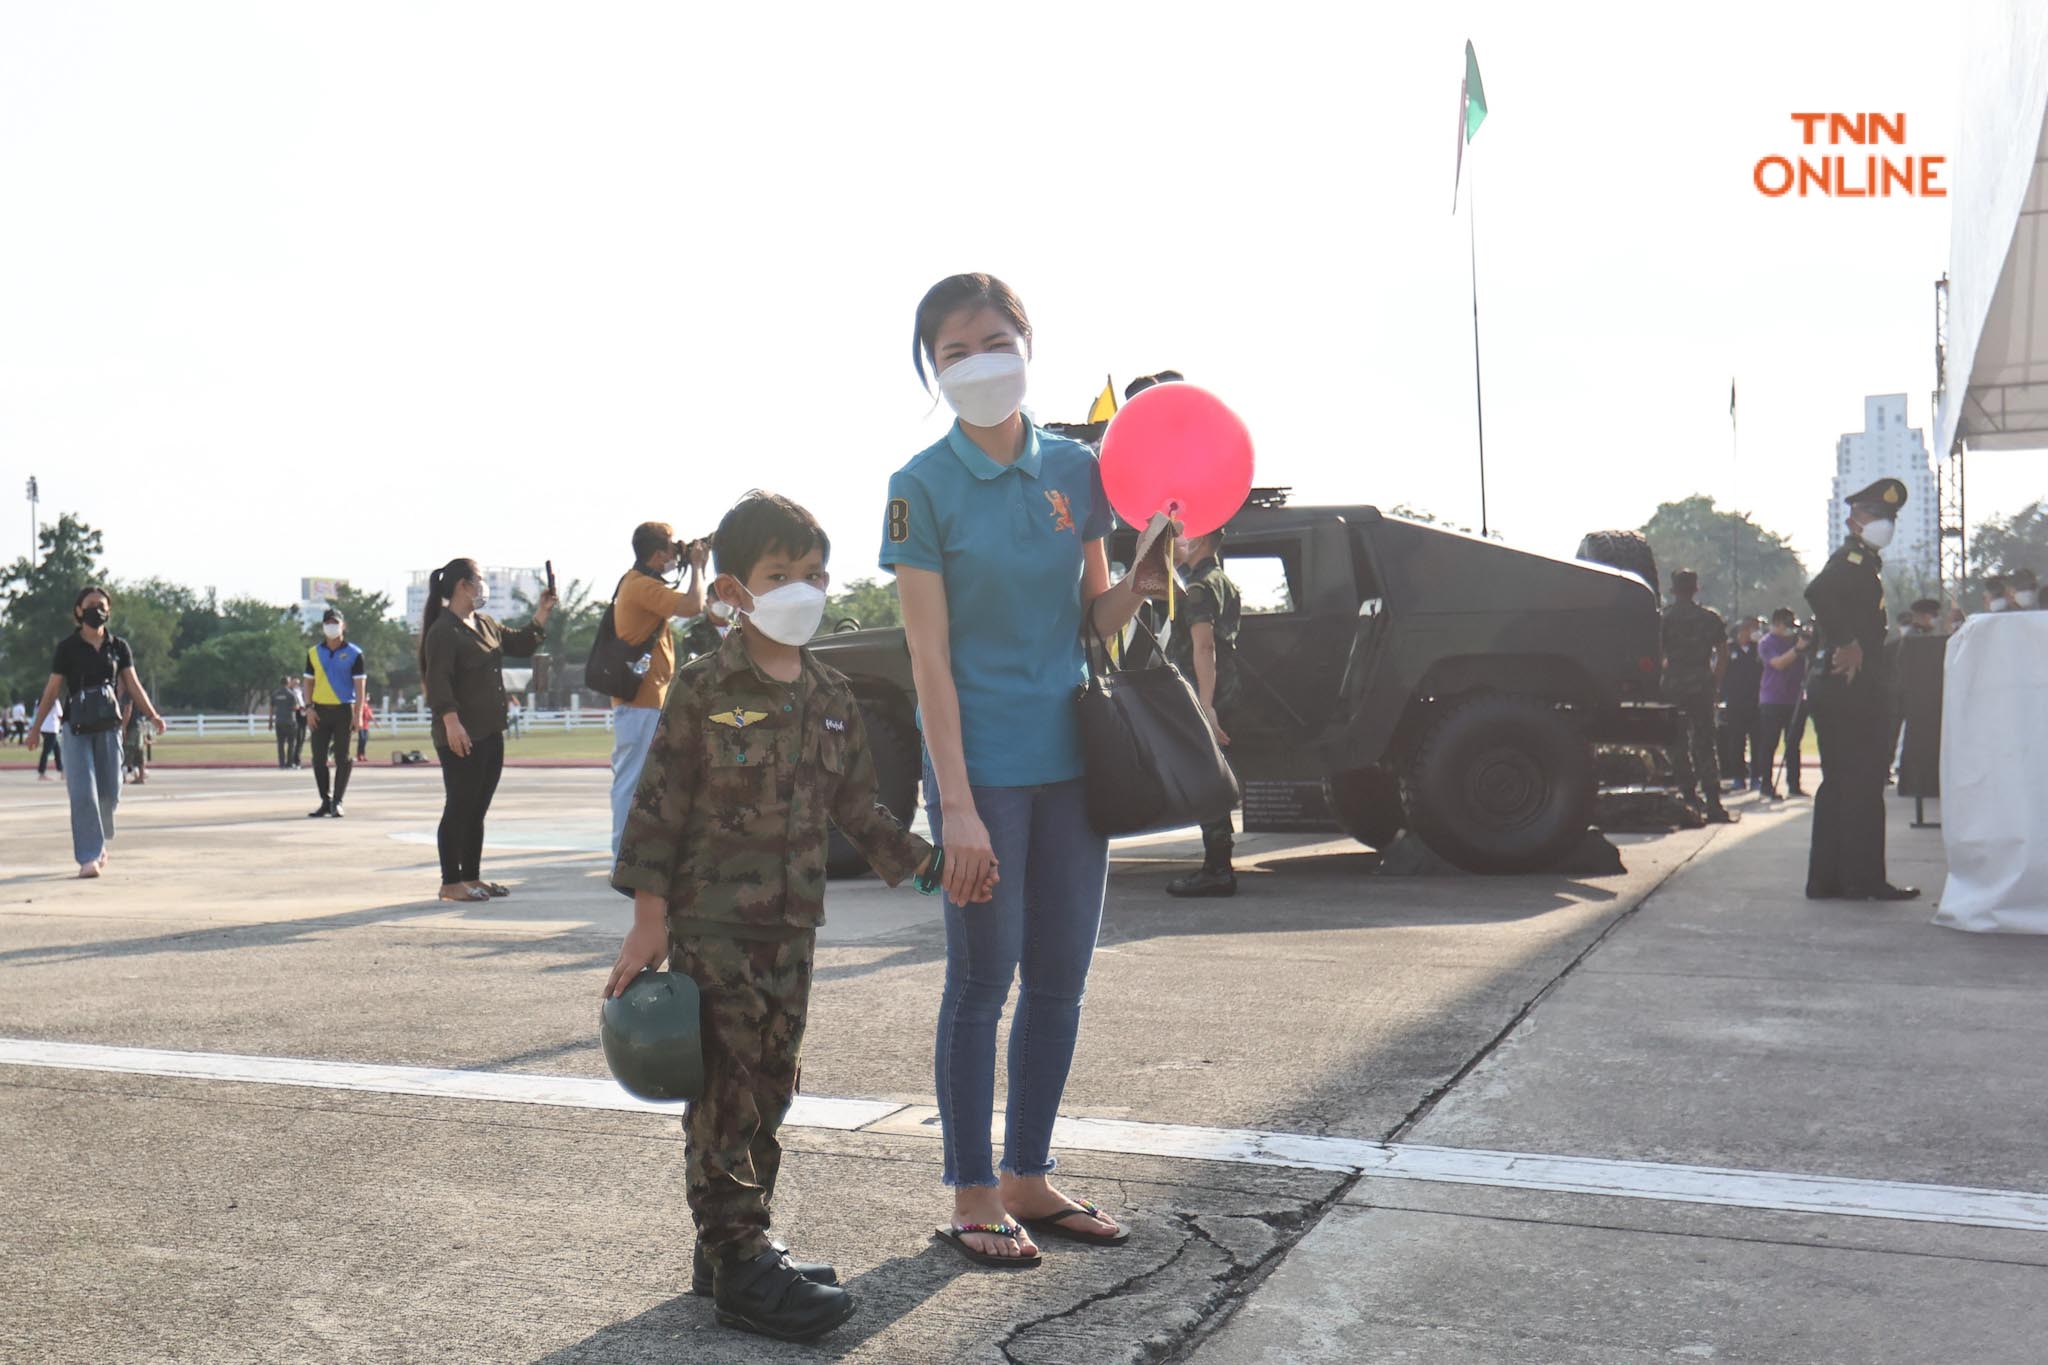 กองทัพบกจัดเต็ม เด็กๆสวมชุดทหารร่วมชมรถถังอย่างใกล้ชิด